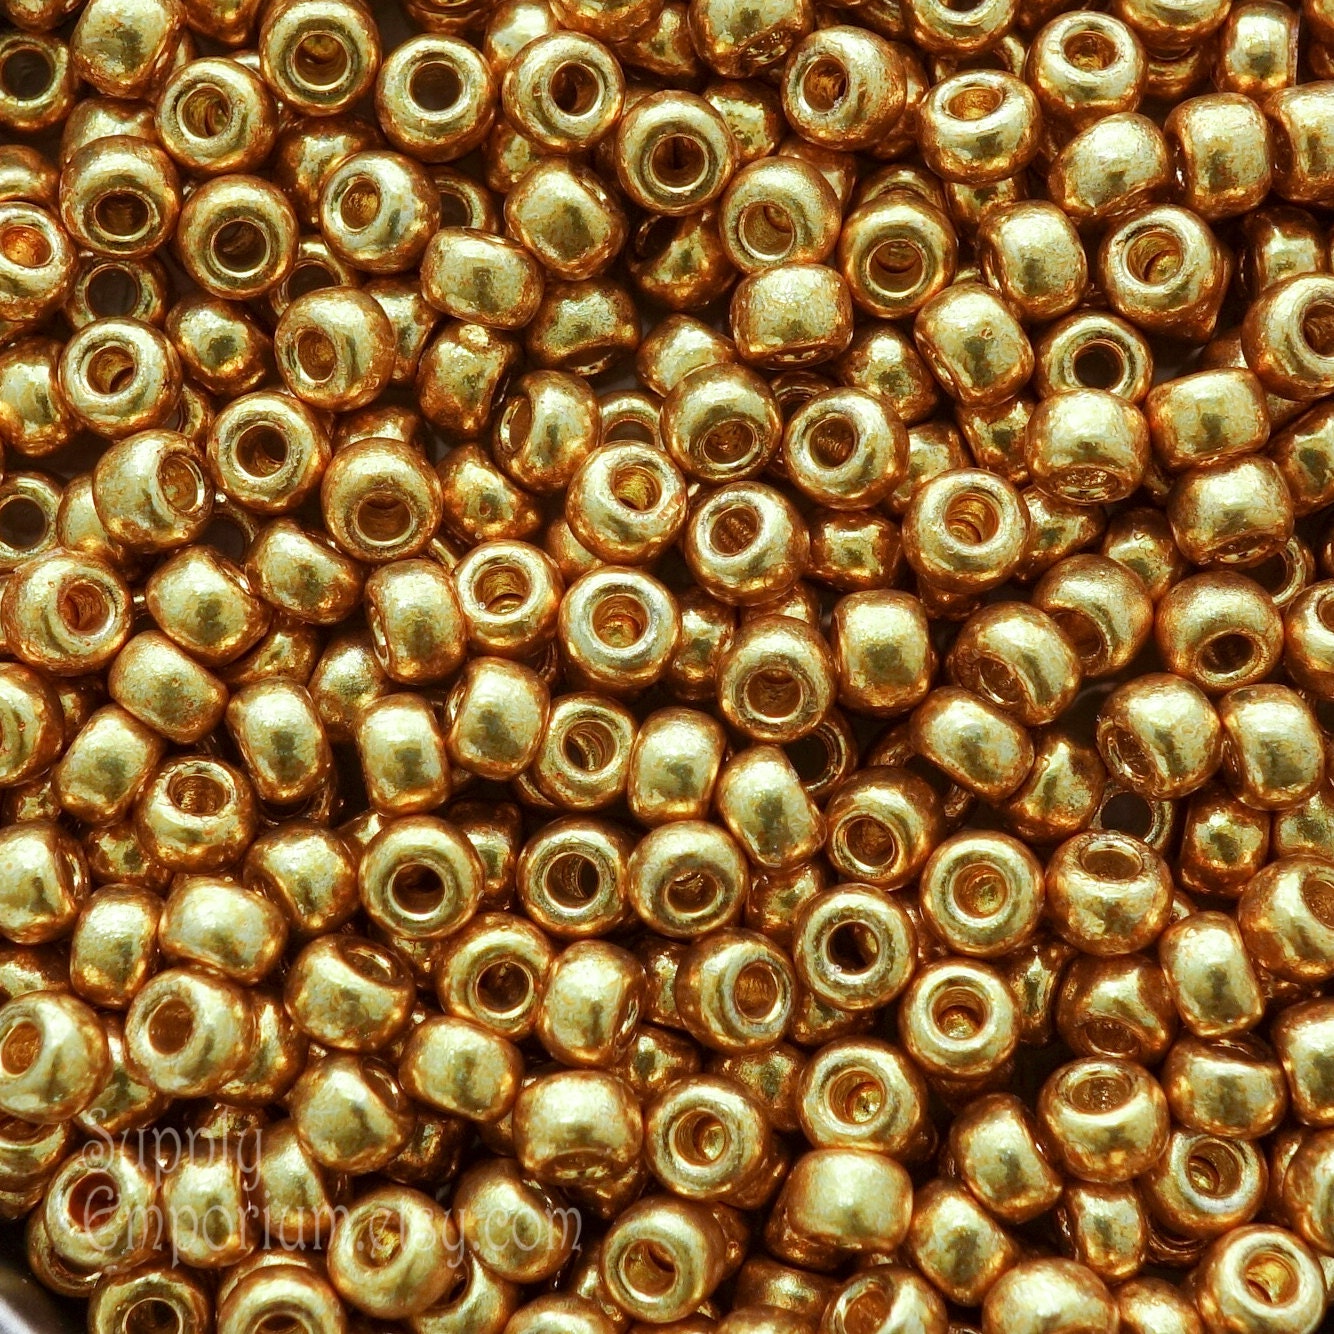 6/0 Miyuki Duracoat Galvanized Gold Seed Beads - Color 6-4202 - Miyuki 6/0  Seed Beads - Galvanized Gold 6/0 Bead, 2889 (15g)